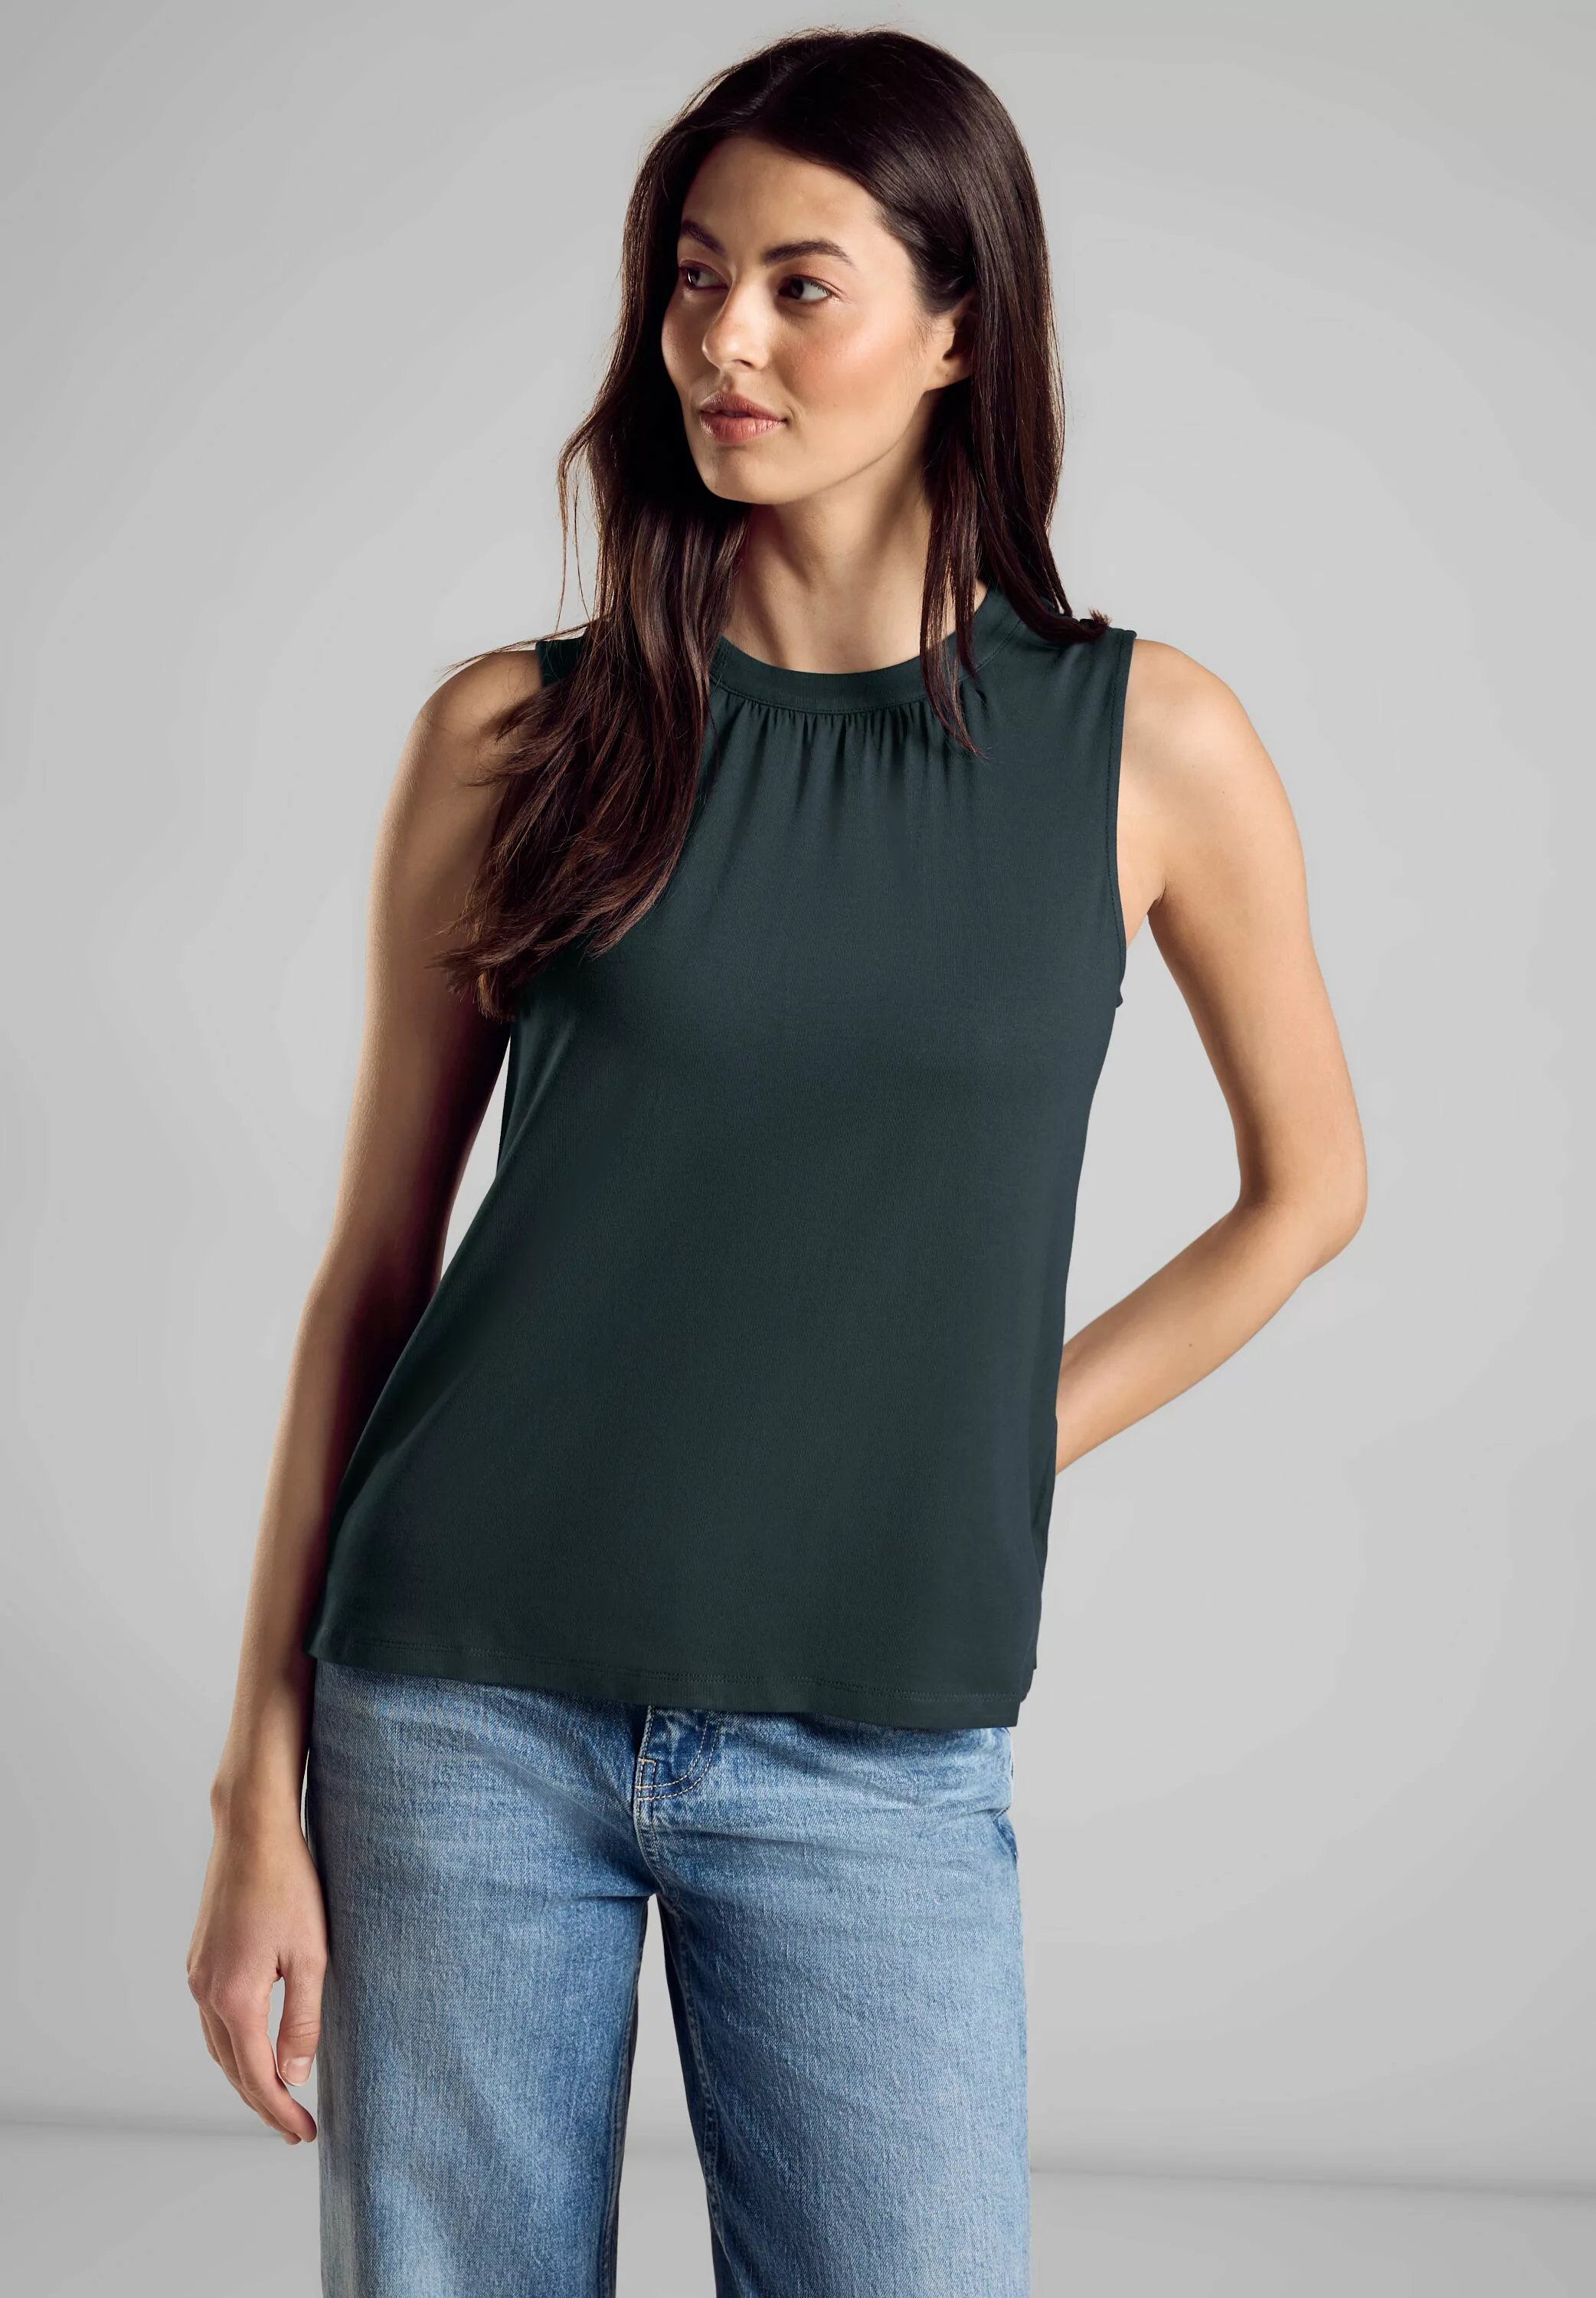 STREET ONE Shirttop - ärmelloses Top - Jersey Top - elegant günstig online kaufen